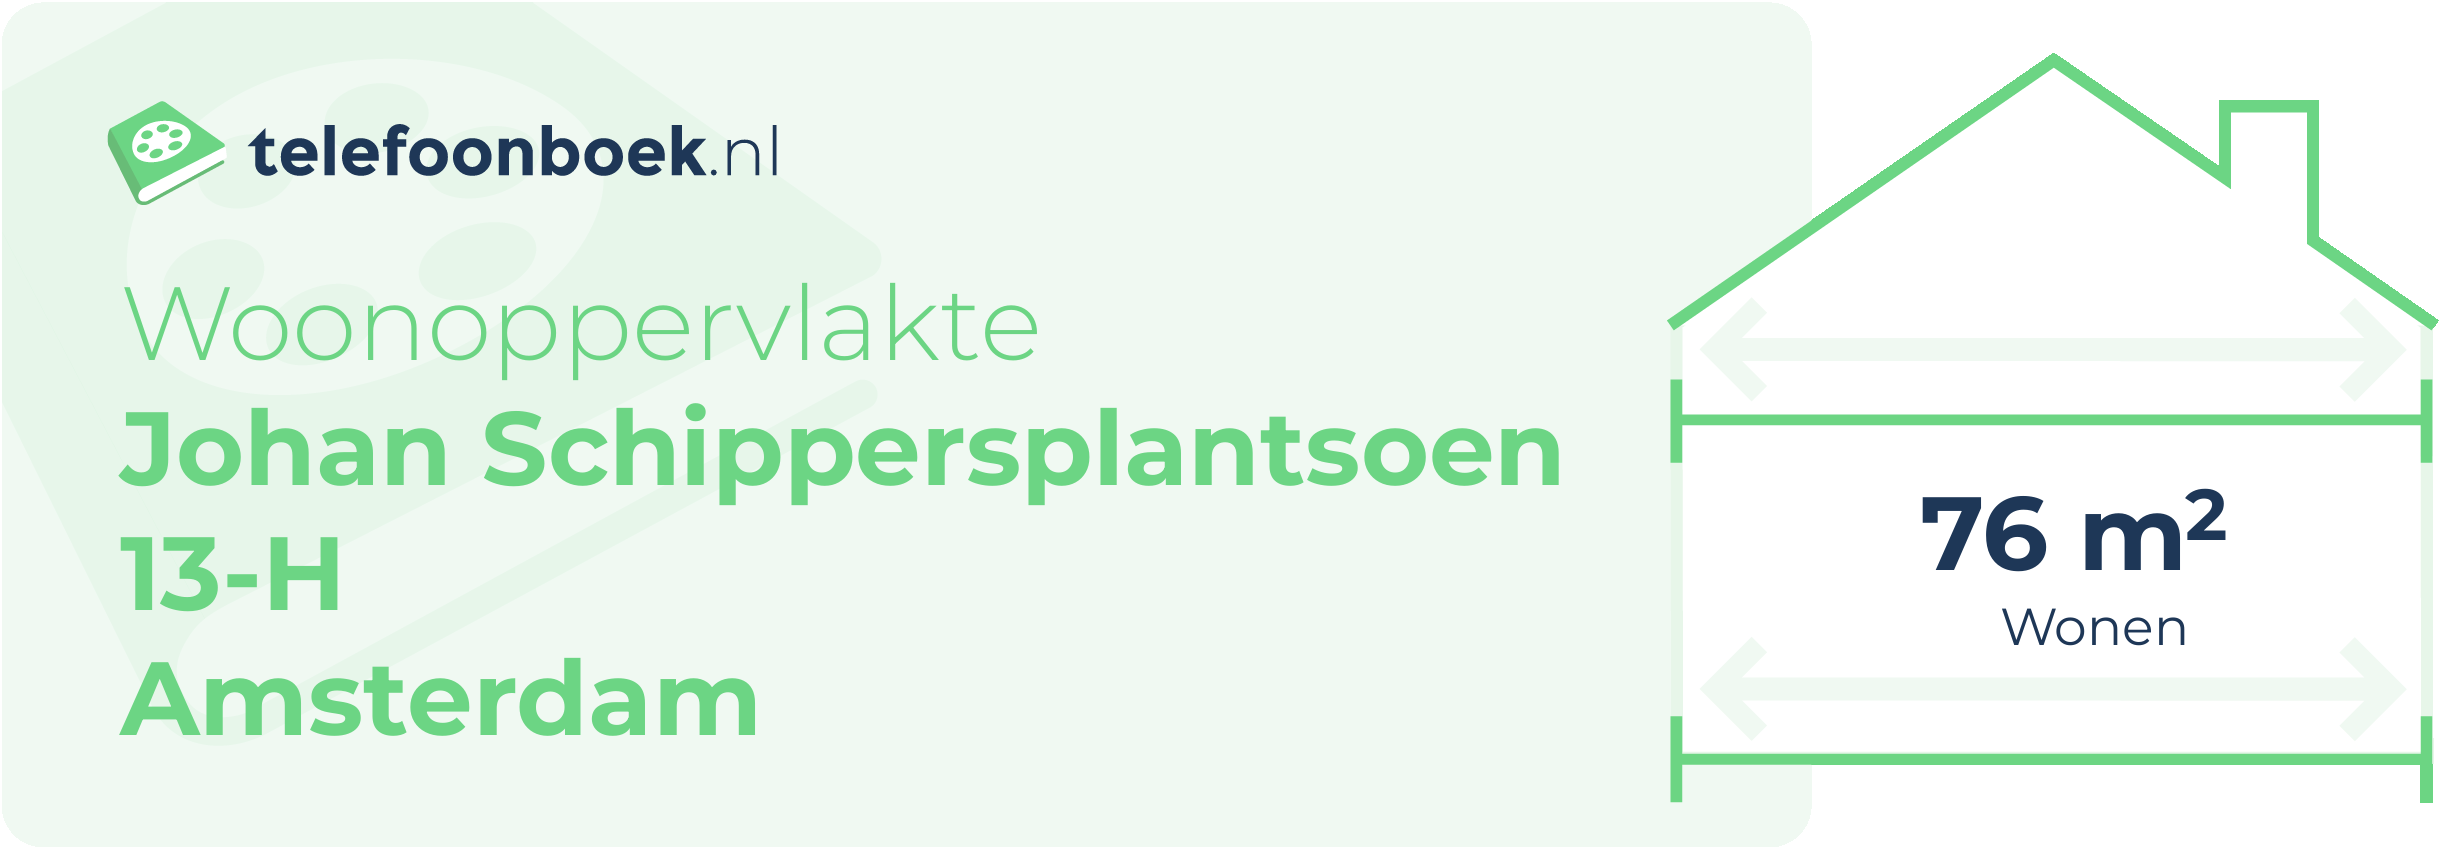 Woonoppervlakte Johan Schippersplantsoen 13-H Amsterdam